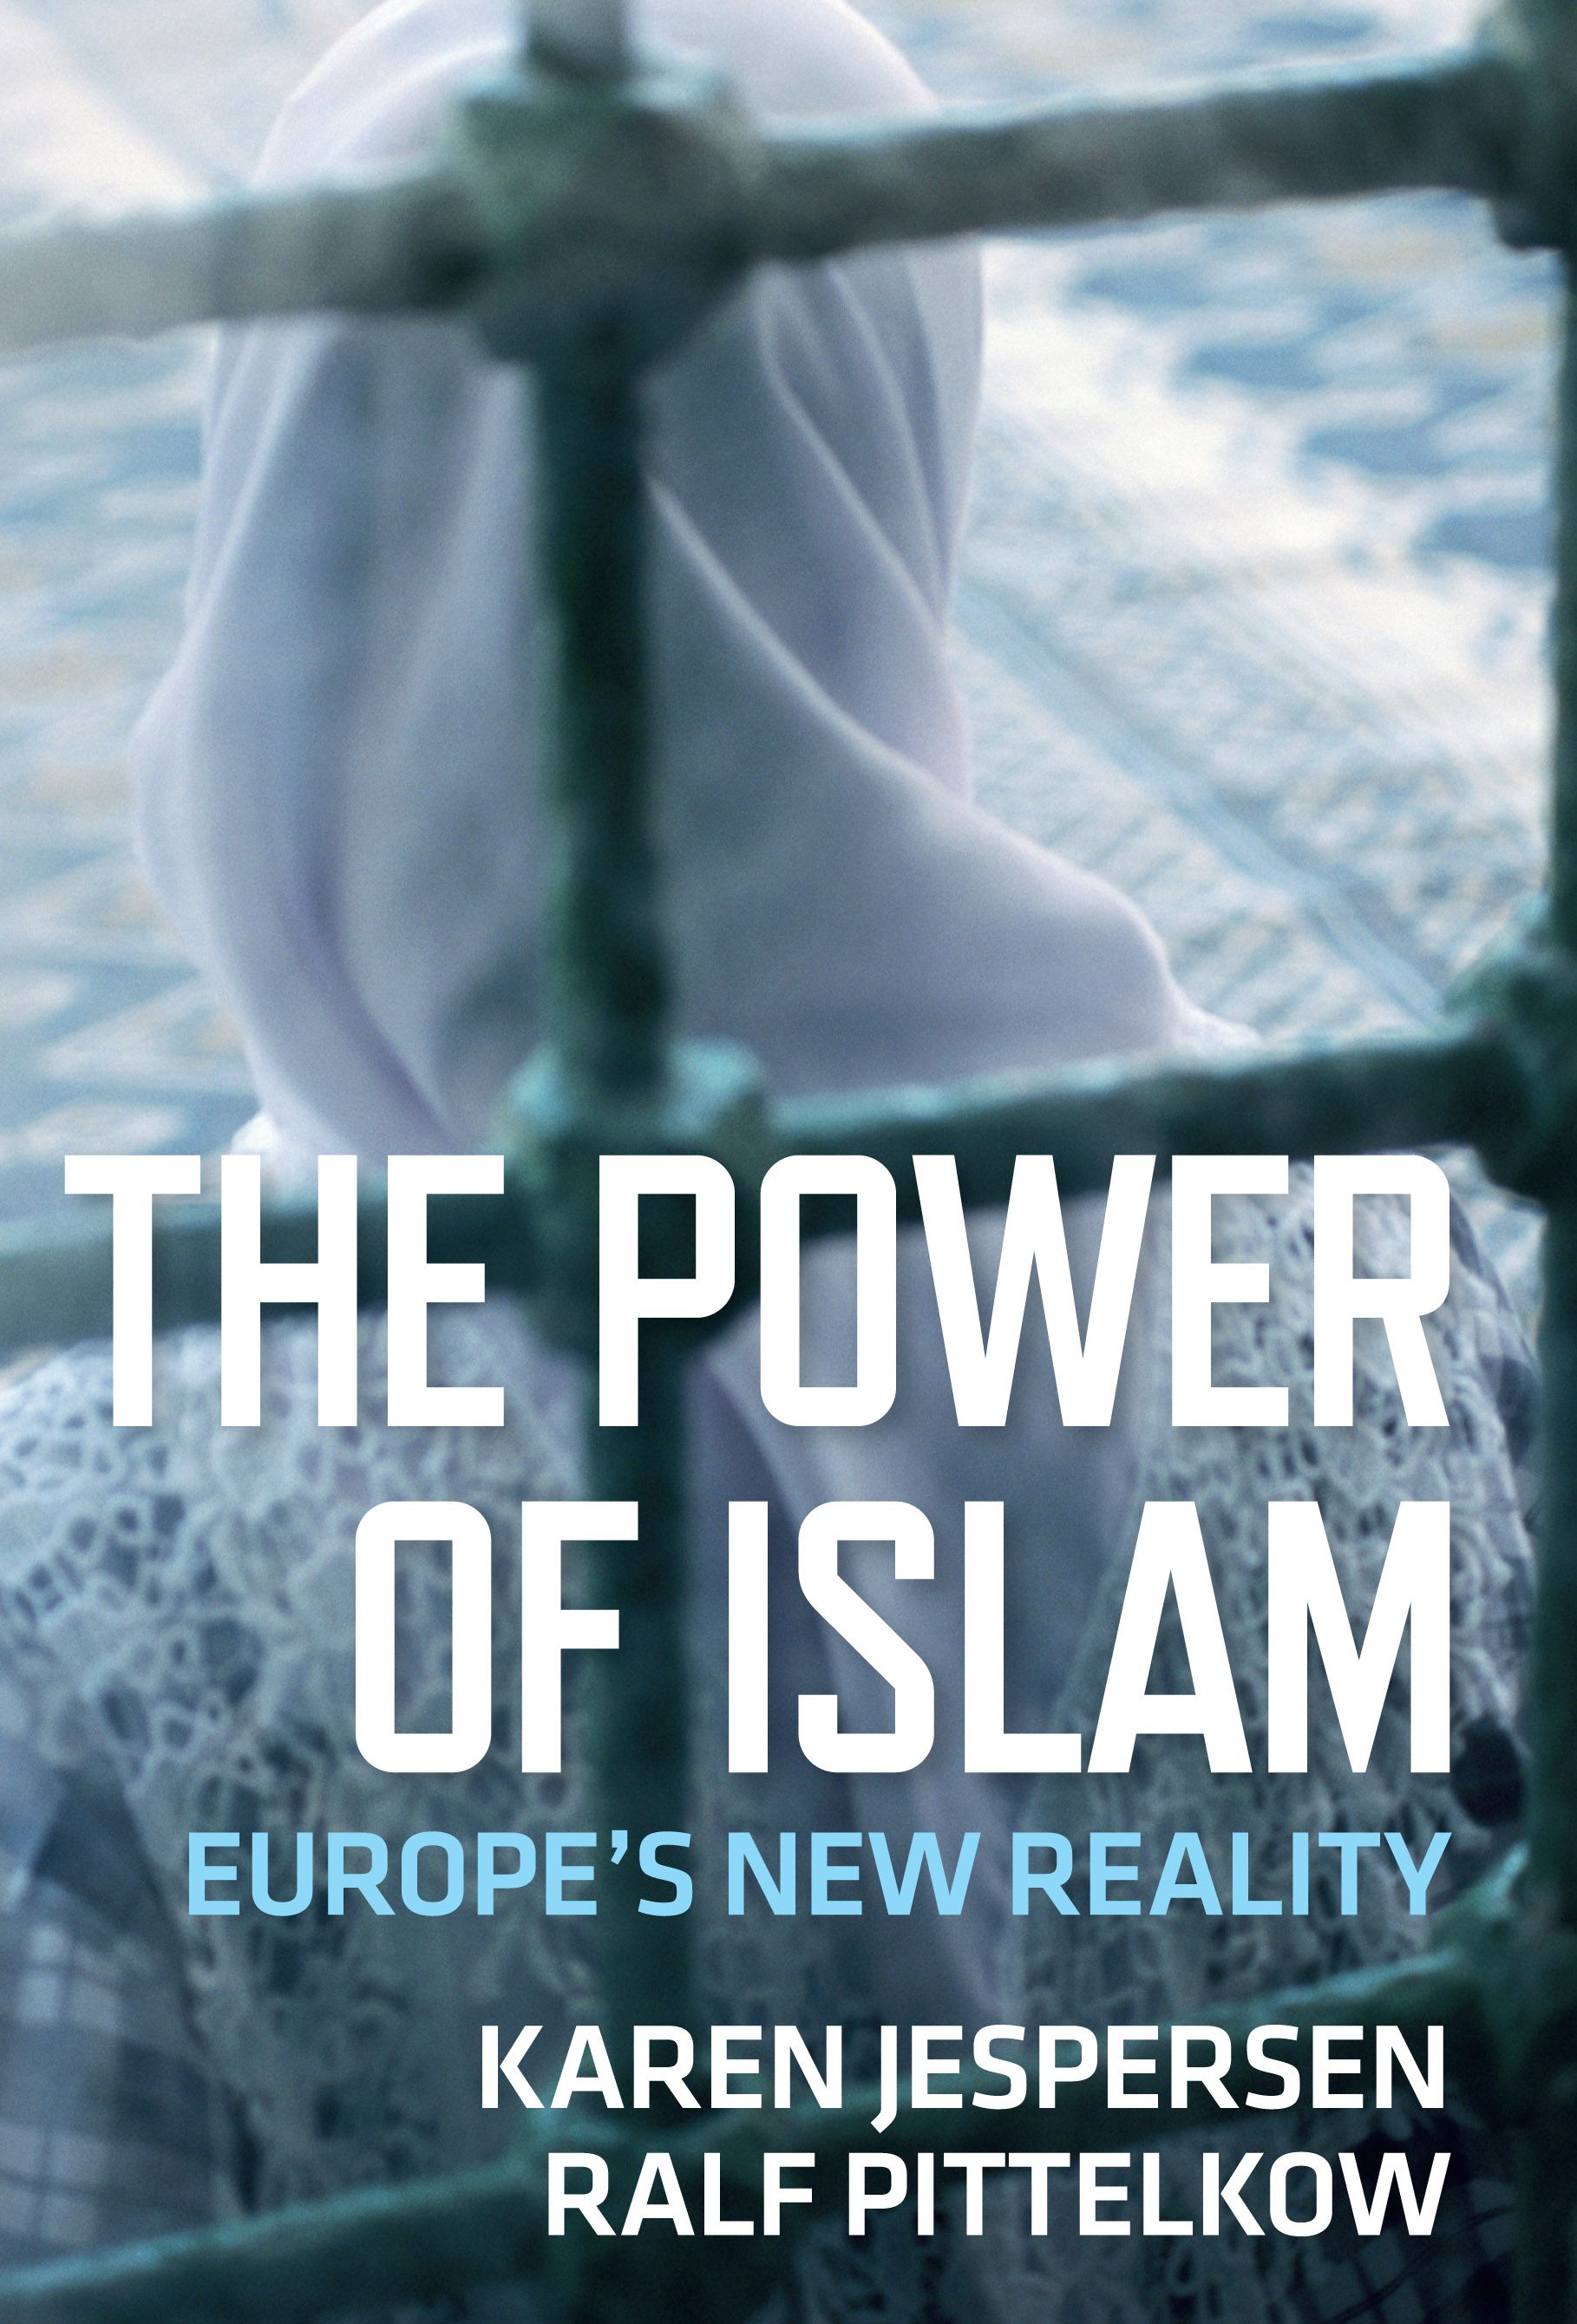 The Power of Islam, e-bok av Karen Jespersen, Ralf Pittelkow